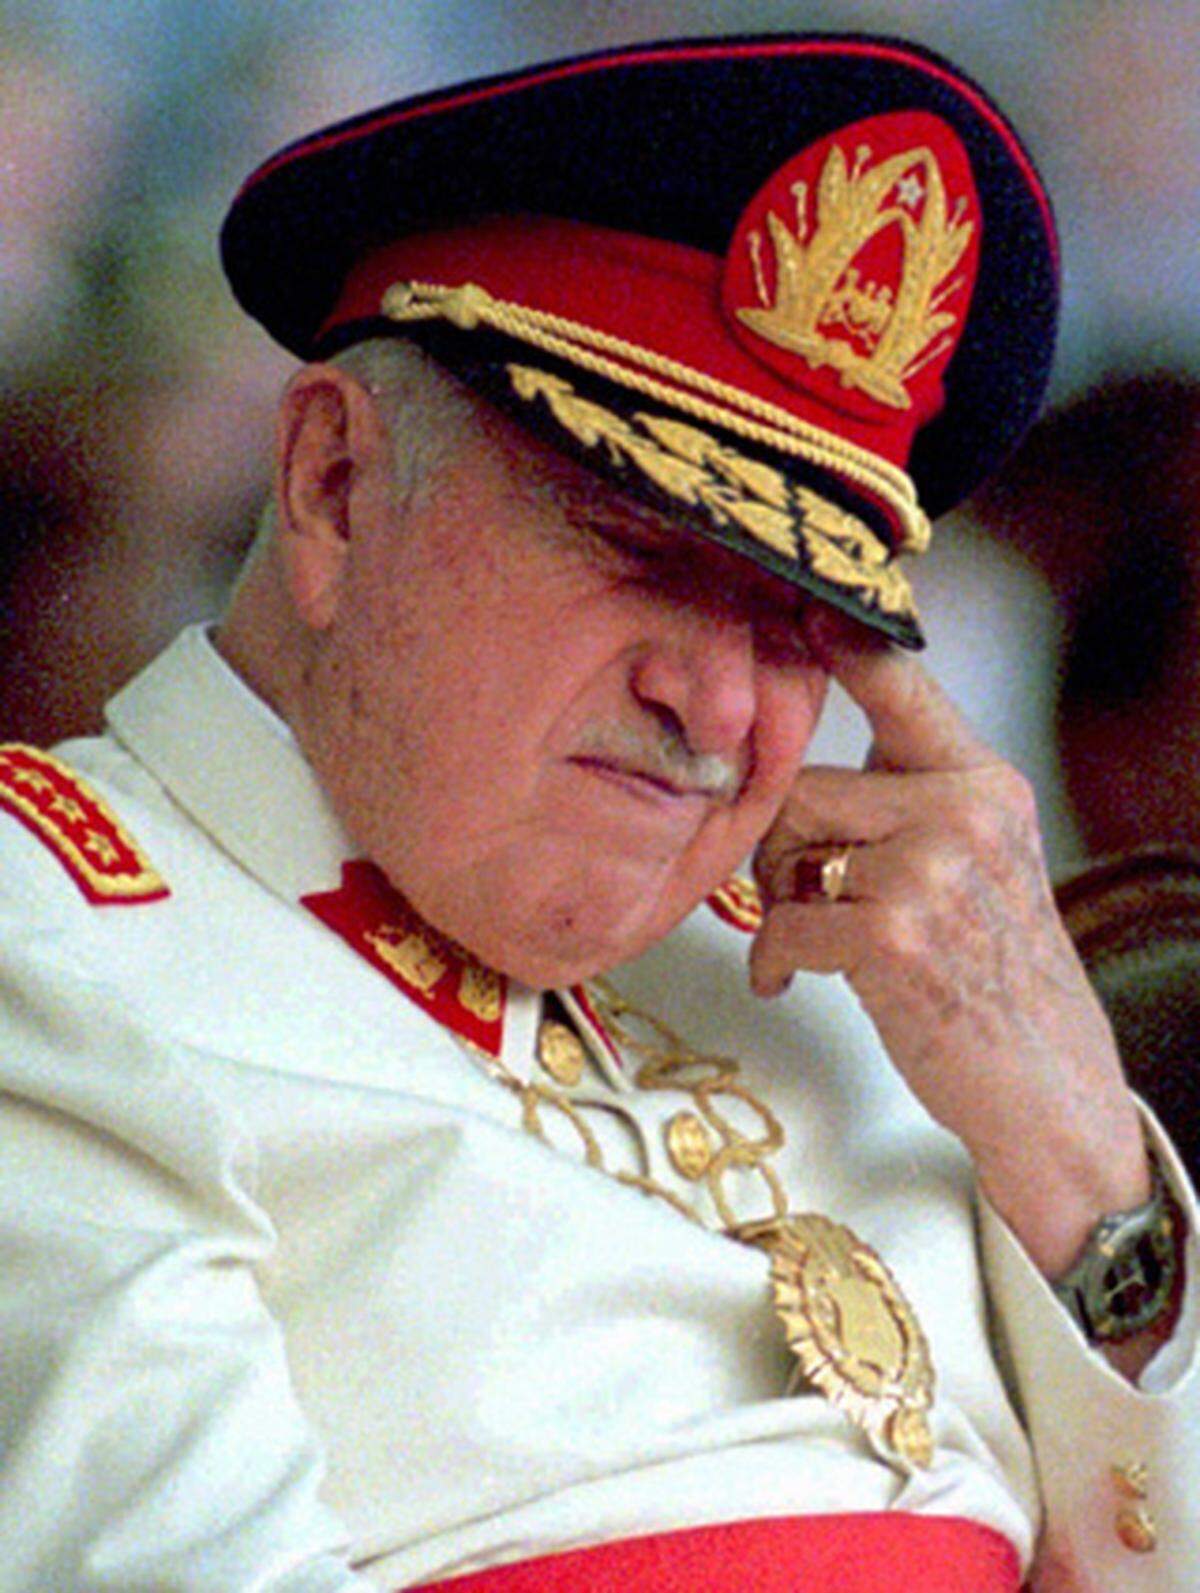 Augusto Pinochet betrat 1973 die Weltbühne. Der chilenische Militärchef schickte Kampfflugzeuge in die Hauptstadt Santiago und ließ den Präsidentenpalast angreifen. Der demokratisch gewählte Präsident Salvador Allende beging Selbstmord. An seine Stelle trat eine Militärjunta unter Führung des 58-jährigen Pinochet. 1974 ließ er sich formal zum Präsidenten Chiles ernennen und übte das Amt bis 1990 aus. Tausende Kritiker wurden unter Pinochet gefoltert oder sind spurlos verschwunden. Pinochet starb im Dezember 2006. Der Ex-Präsident bekam kein Staatsbegräbnis.